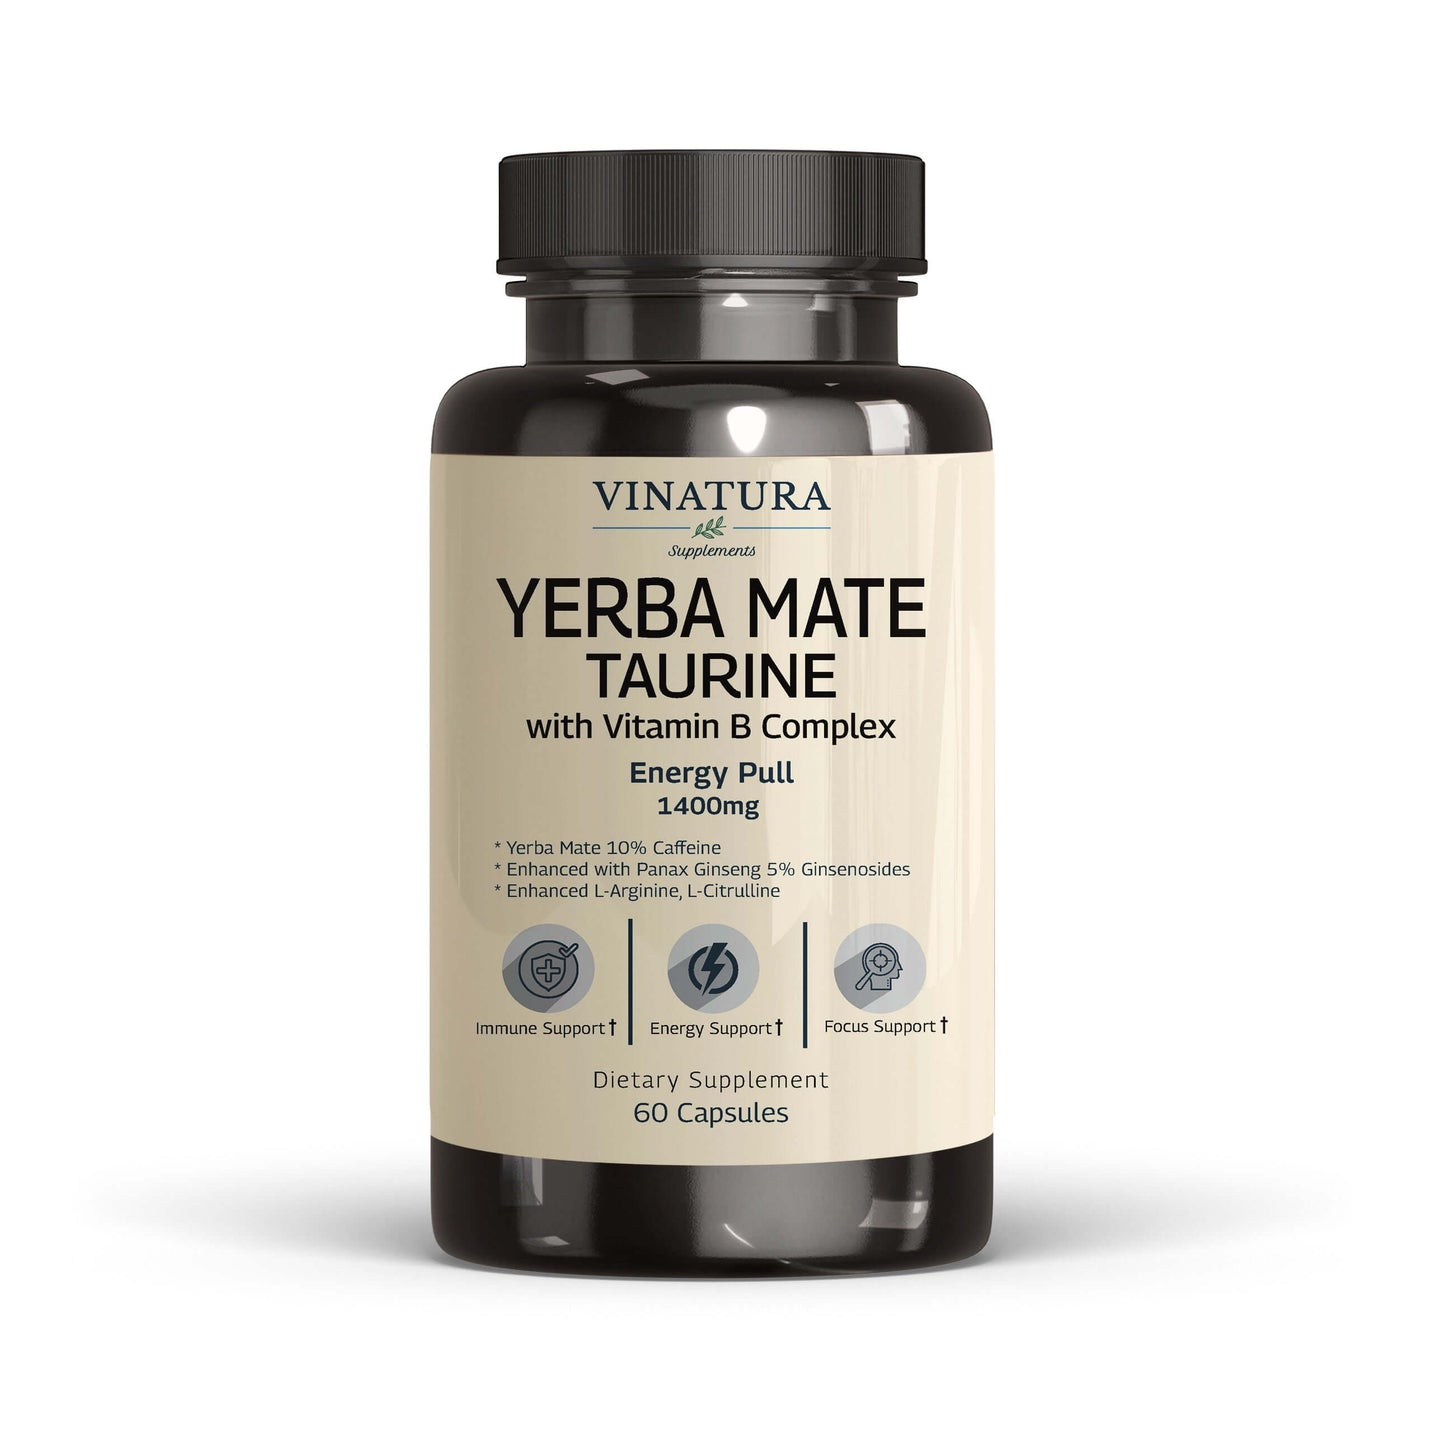 10 Health Benefits of Yerba Mate